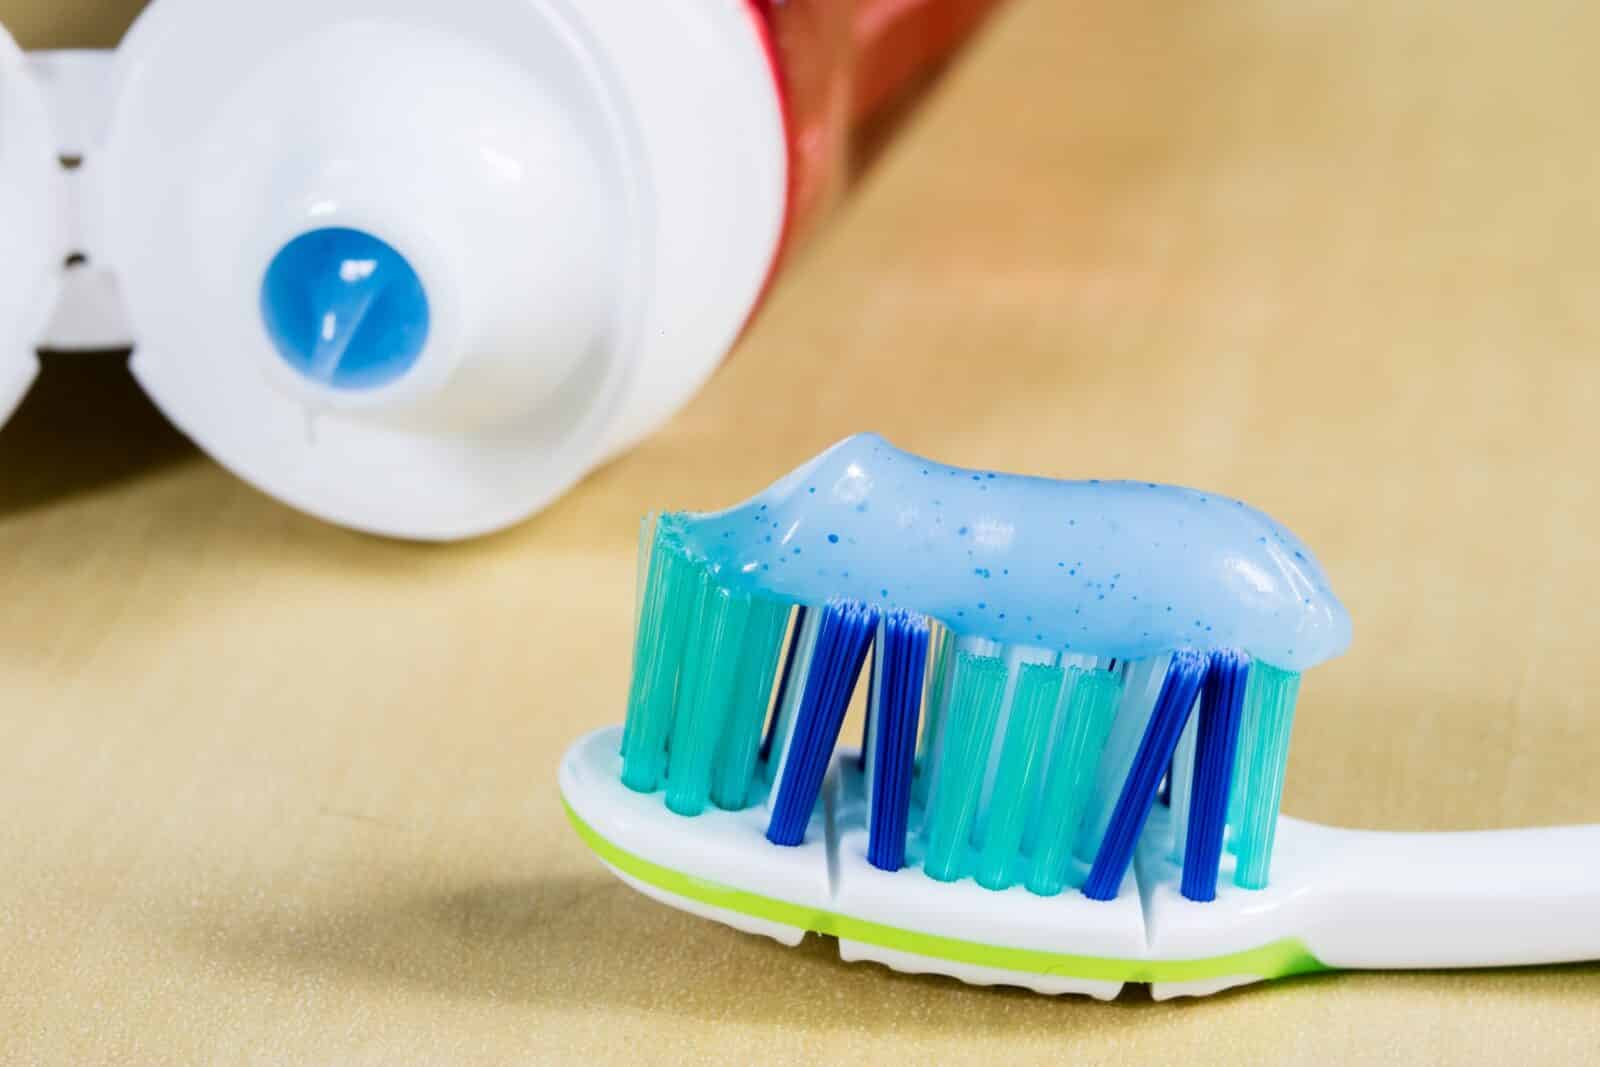 fluor pasta do zębów